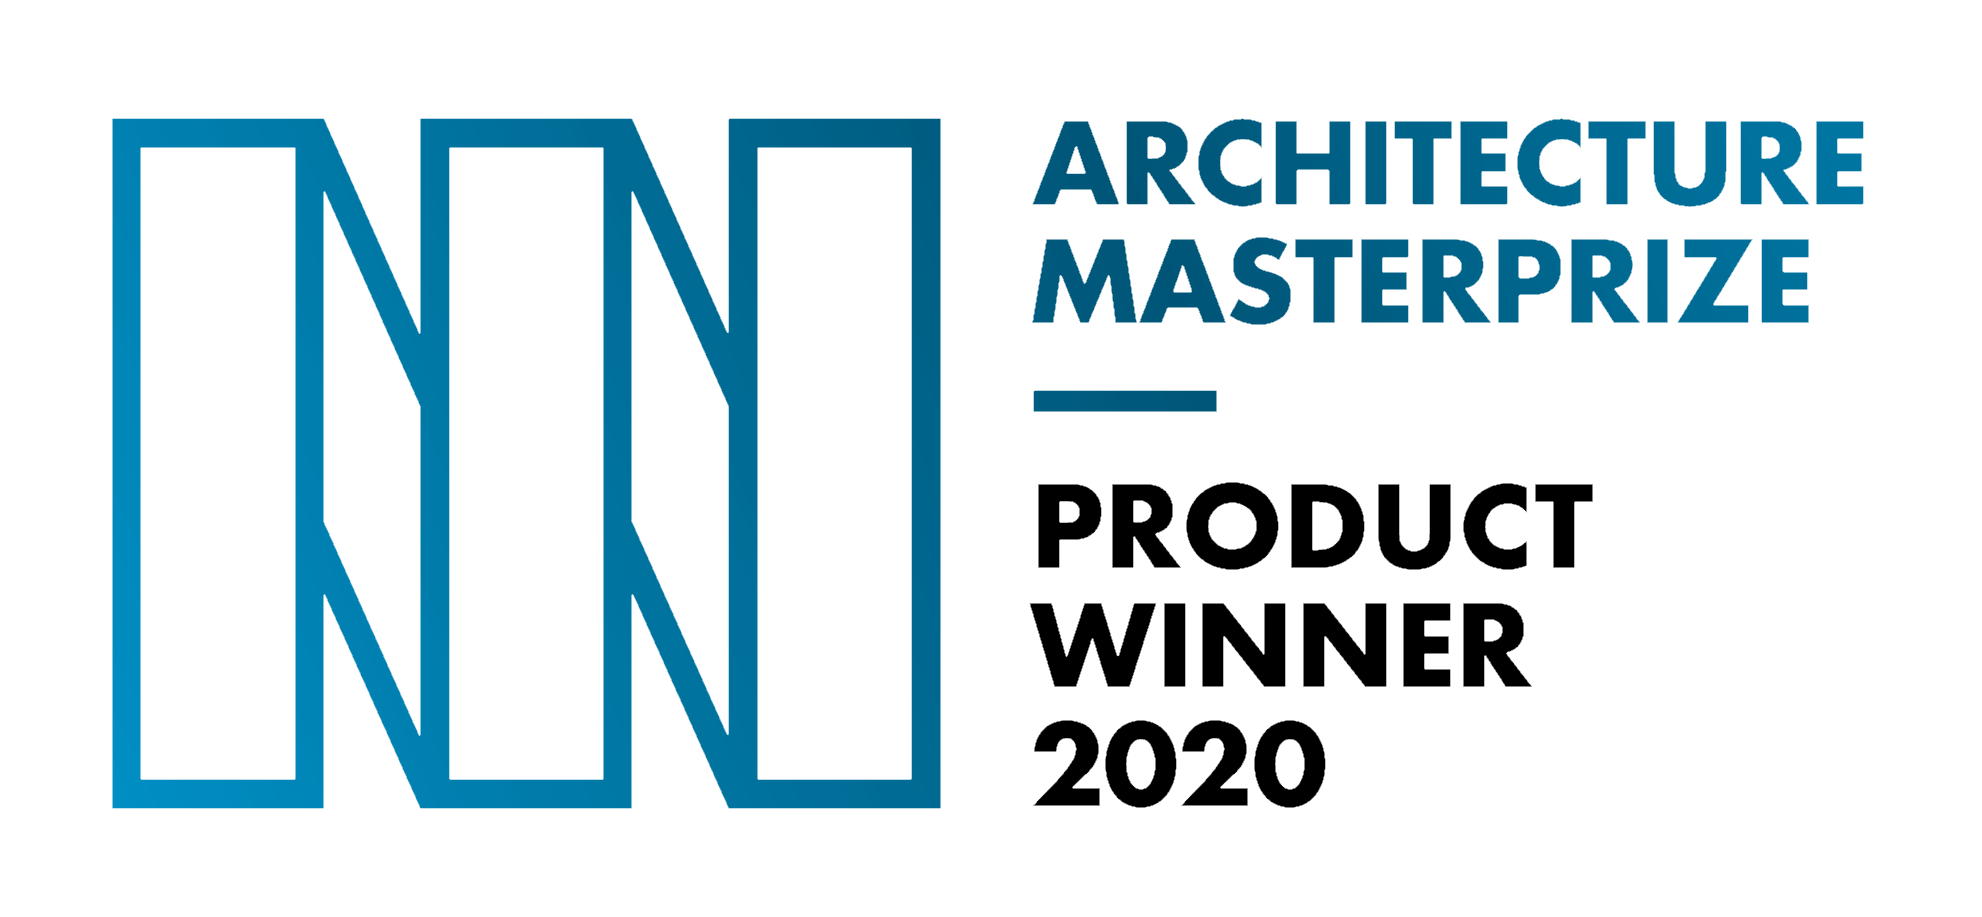 Architecture MasterPrize Awards Nasoni Fountain Faucet Their 2020 Product Design Award - NASONI